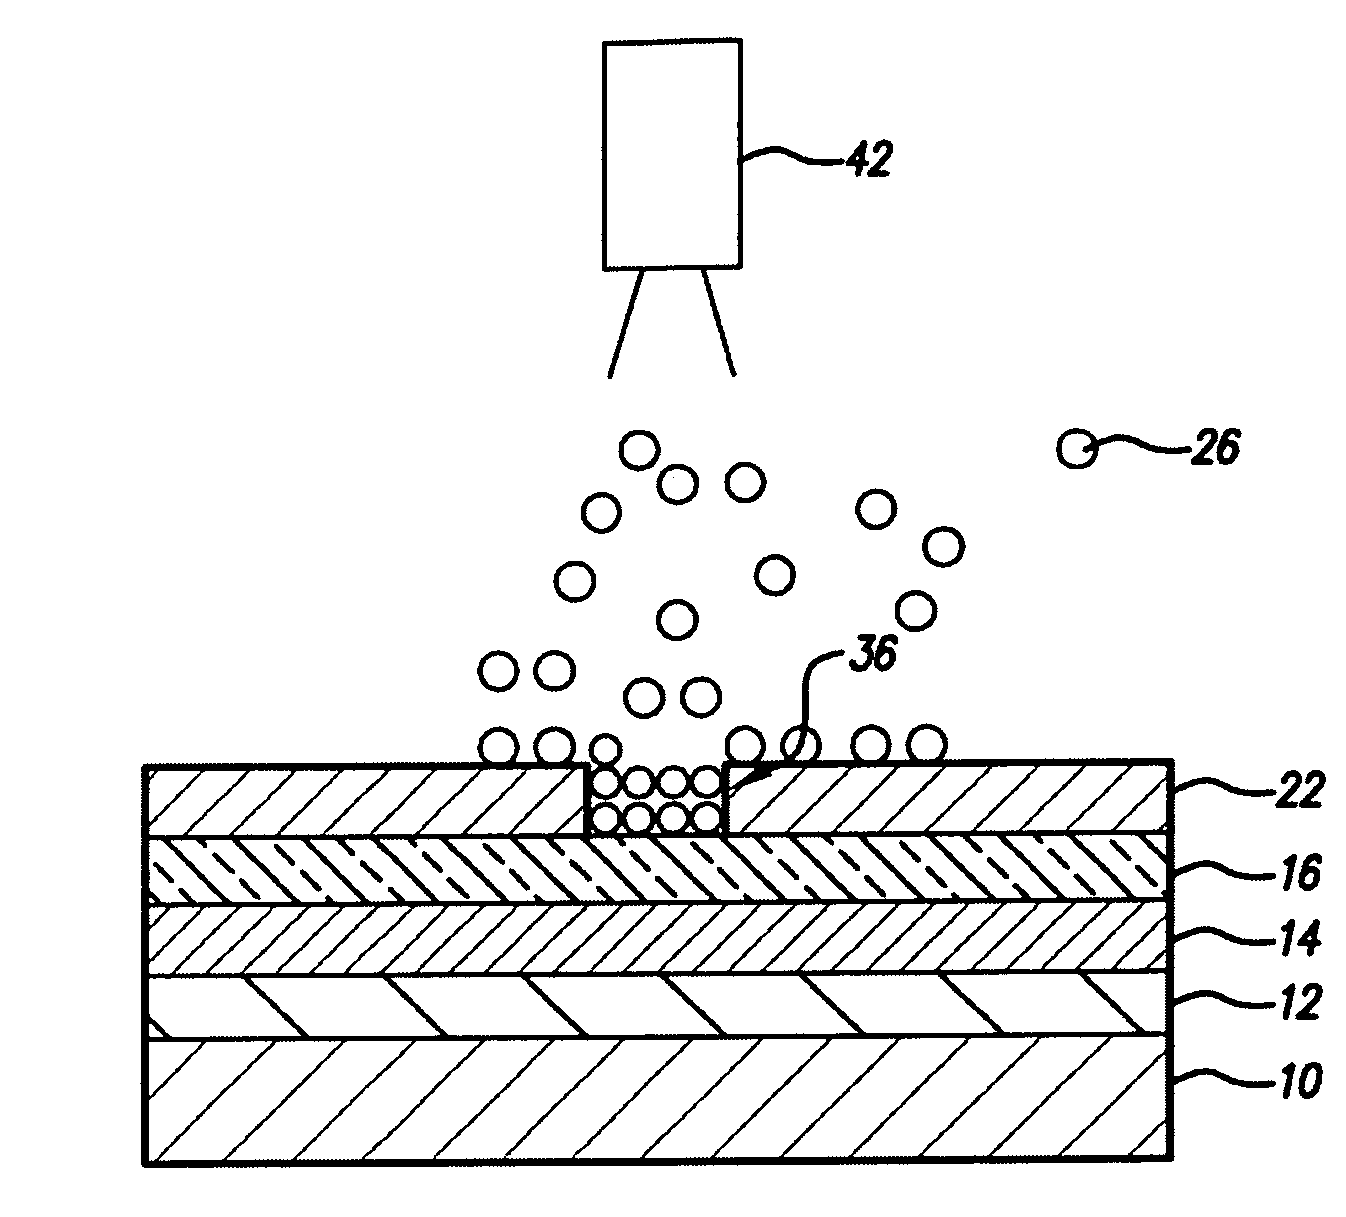 Method for improving current distribution of a transparent electrode